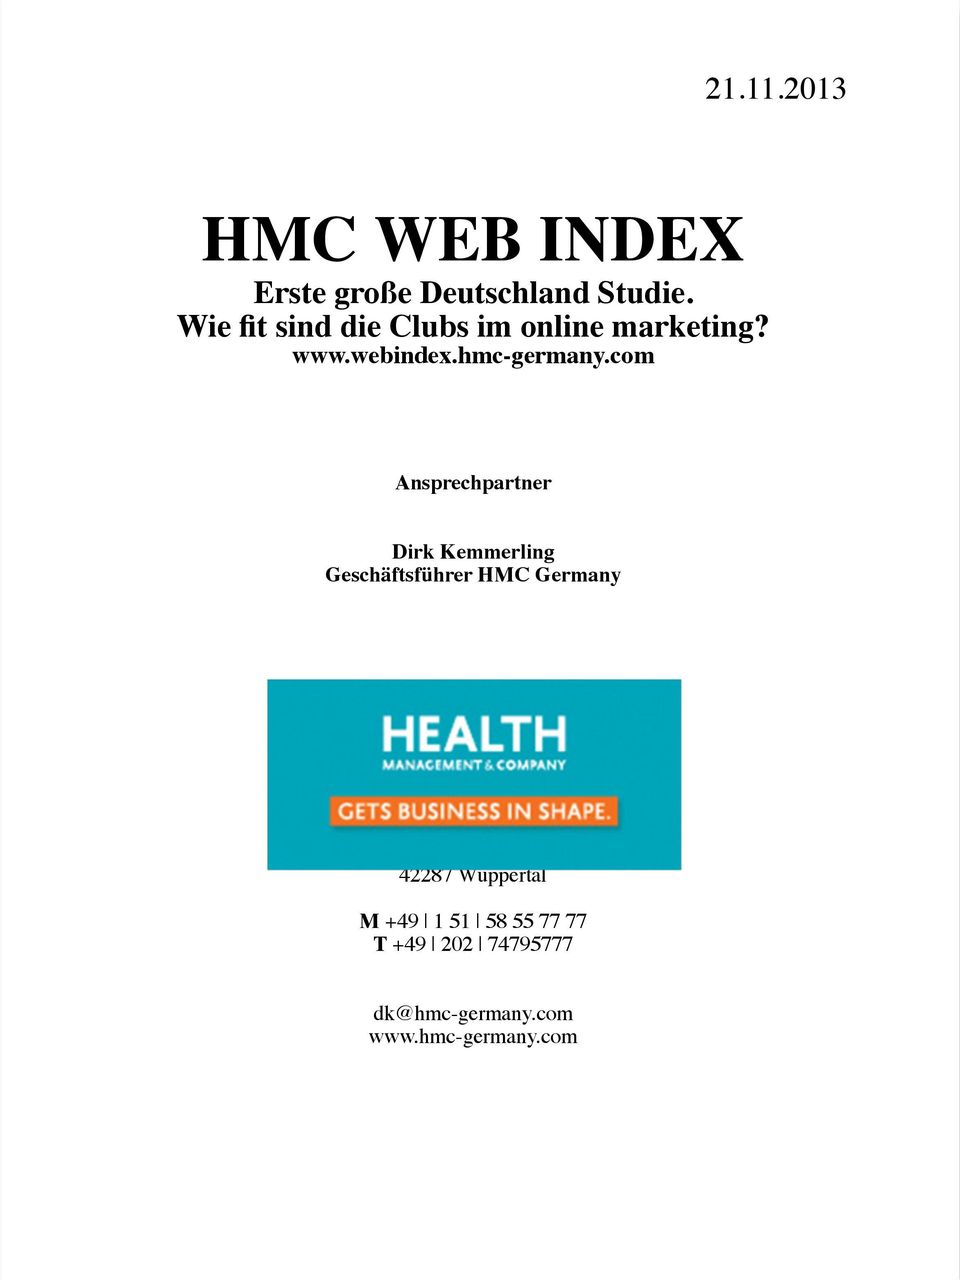 com Ansprechpartner Dirk Kemmerling Geschäftsführer HMC Germany HMC Health